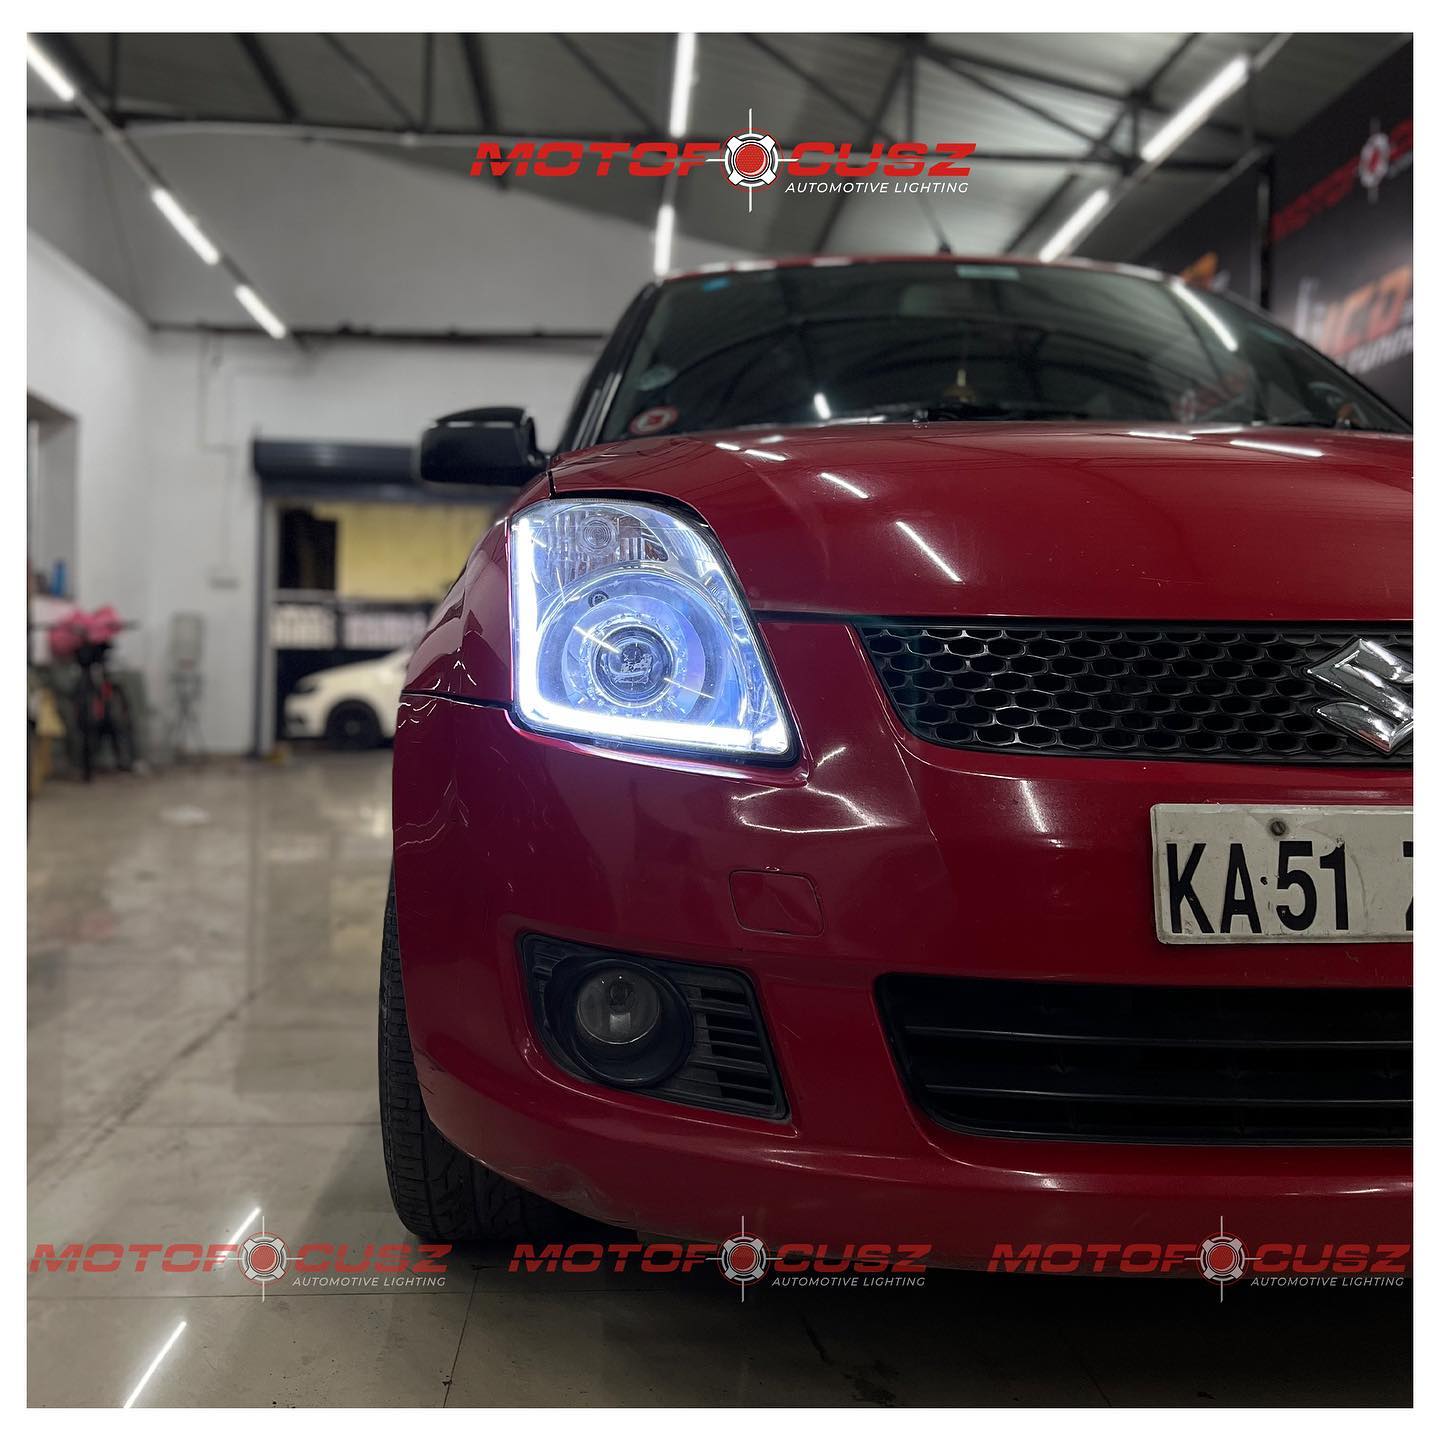 Maruti Suzuki Swift gets performance mini projectors upgrade from Motofocusz Best Headlight customisation in Chennai